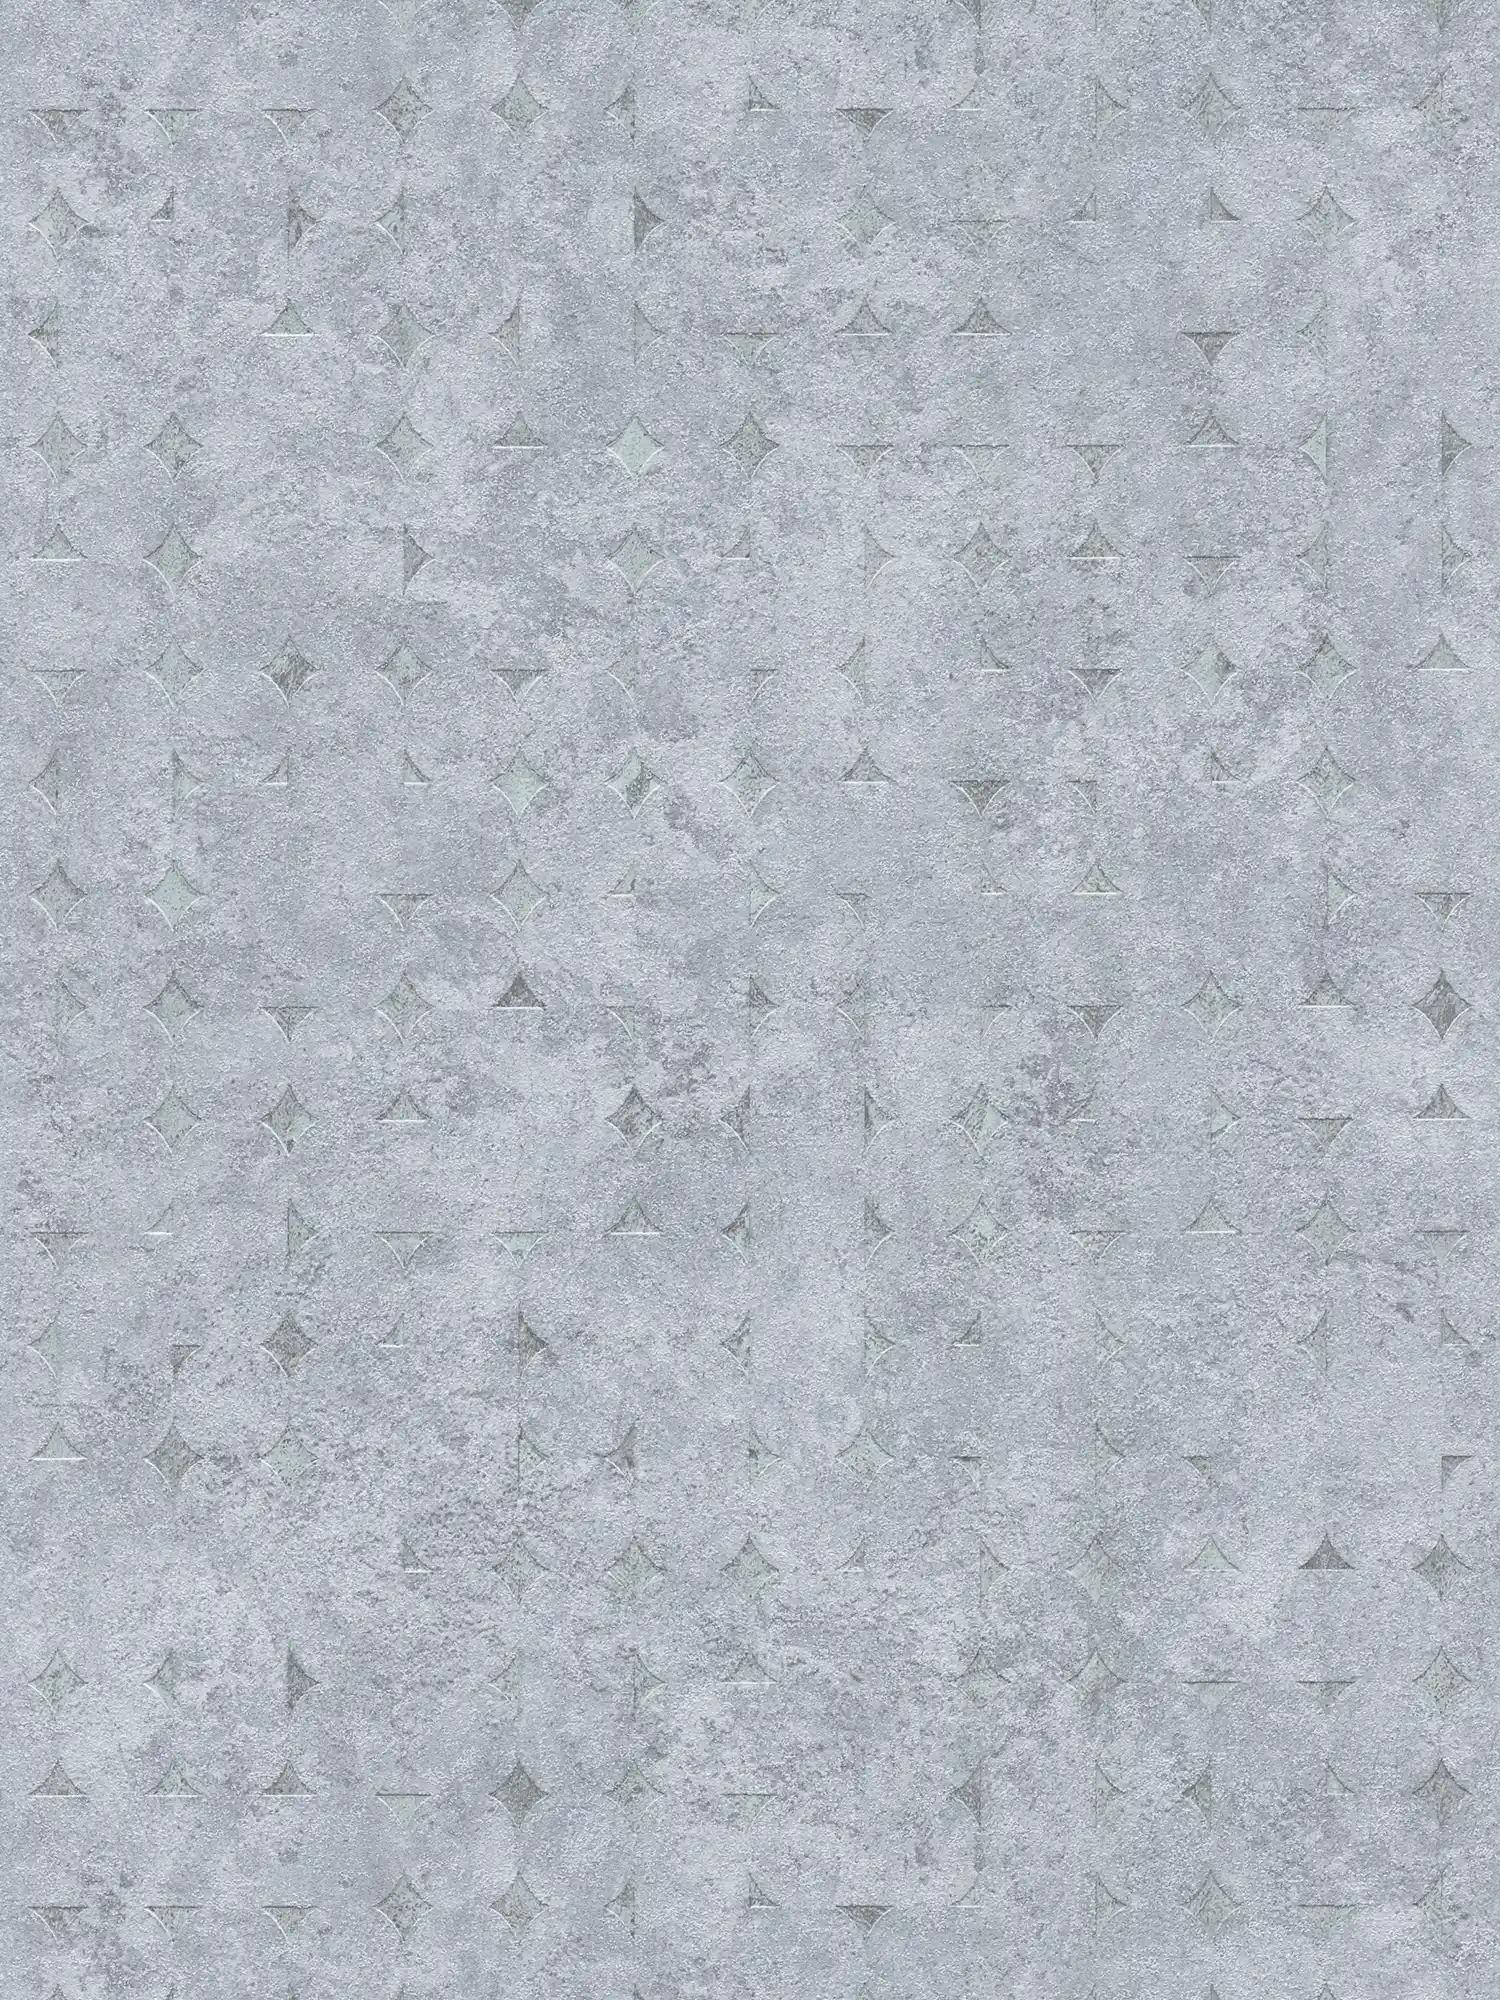 Vliesbehang in één kleur met structuur en ruw patroon - grijs, zilver
